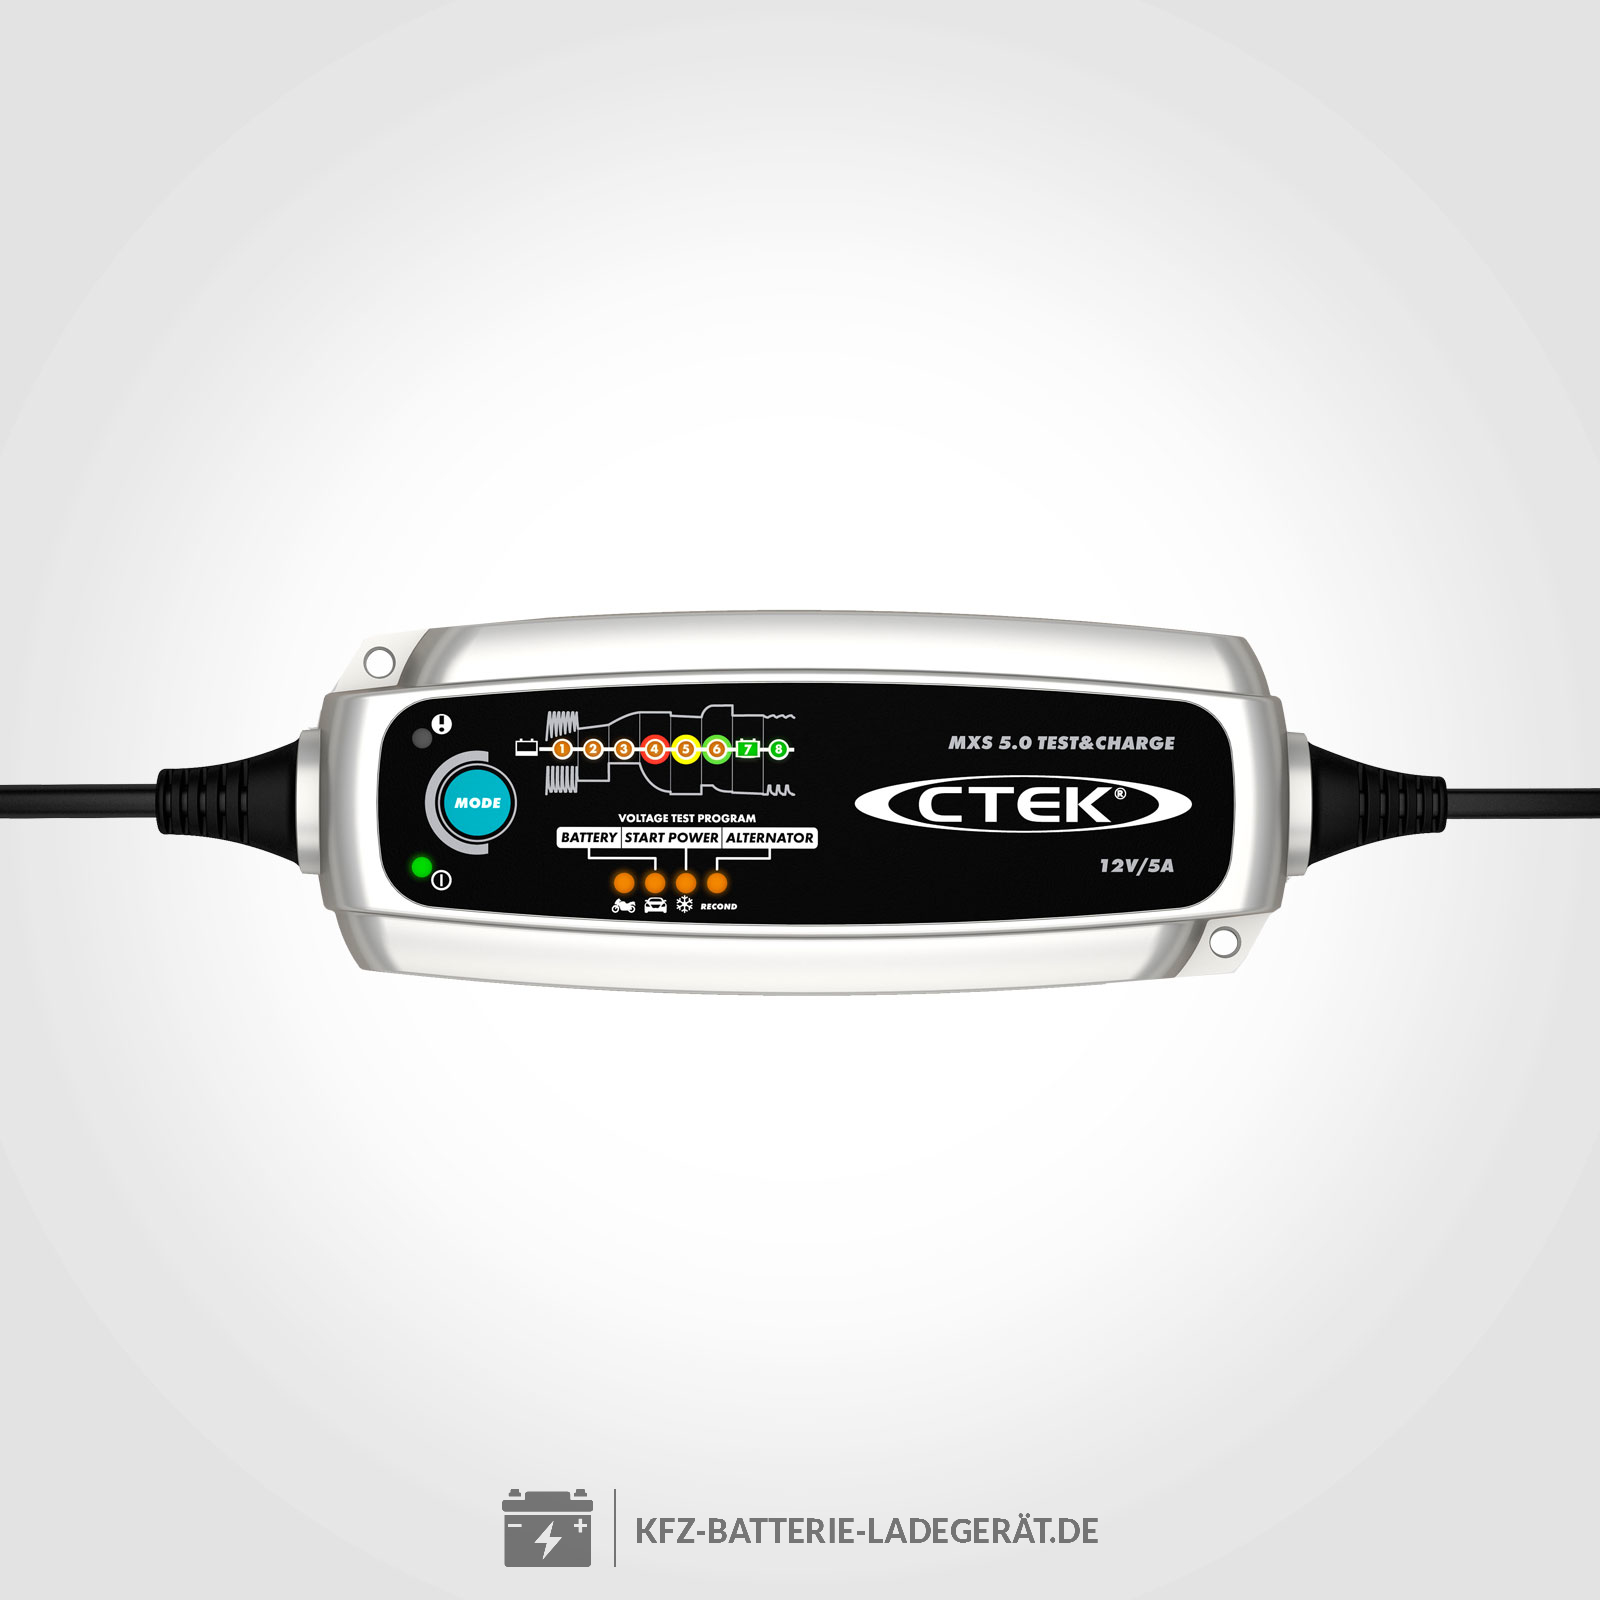 https://www.kfz-batterie-ladegeraet.de/media/image/product/855/lg/ctek-ladegeraet-mxs-5-0-test-and-charge.jpg